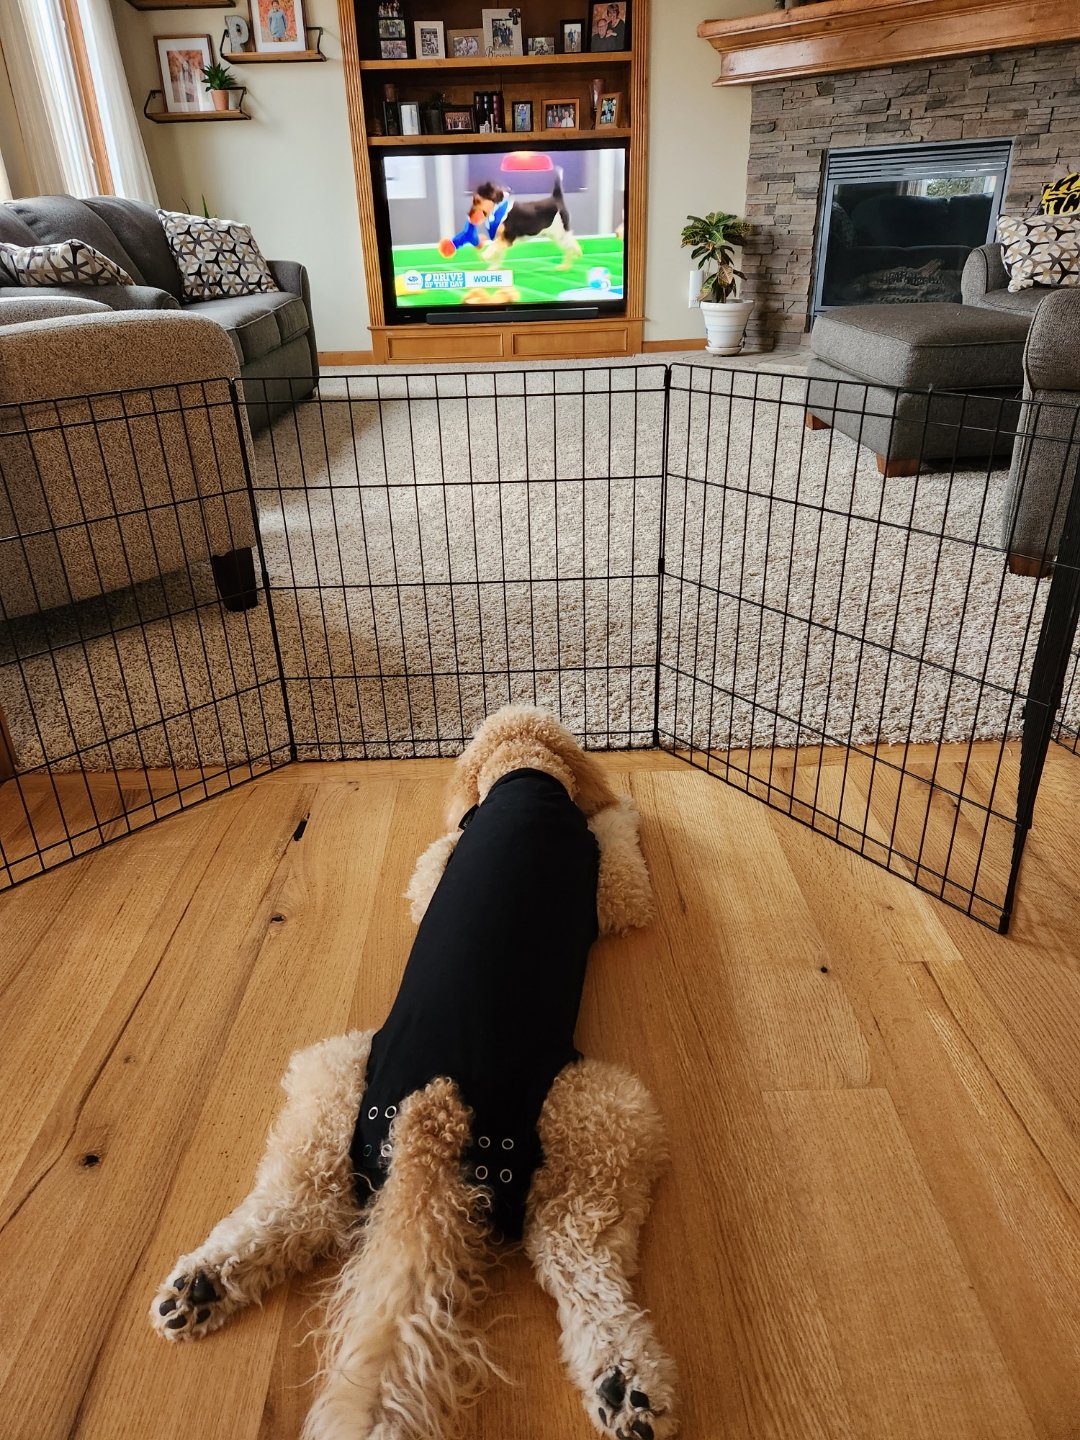 Beau watching Puppy Bowl.jpeg